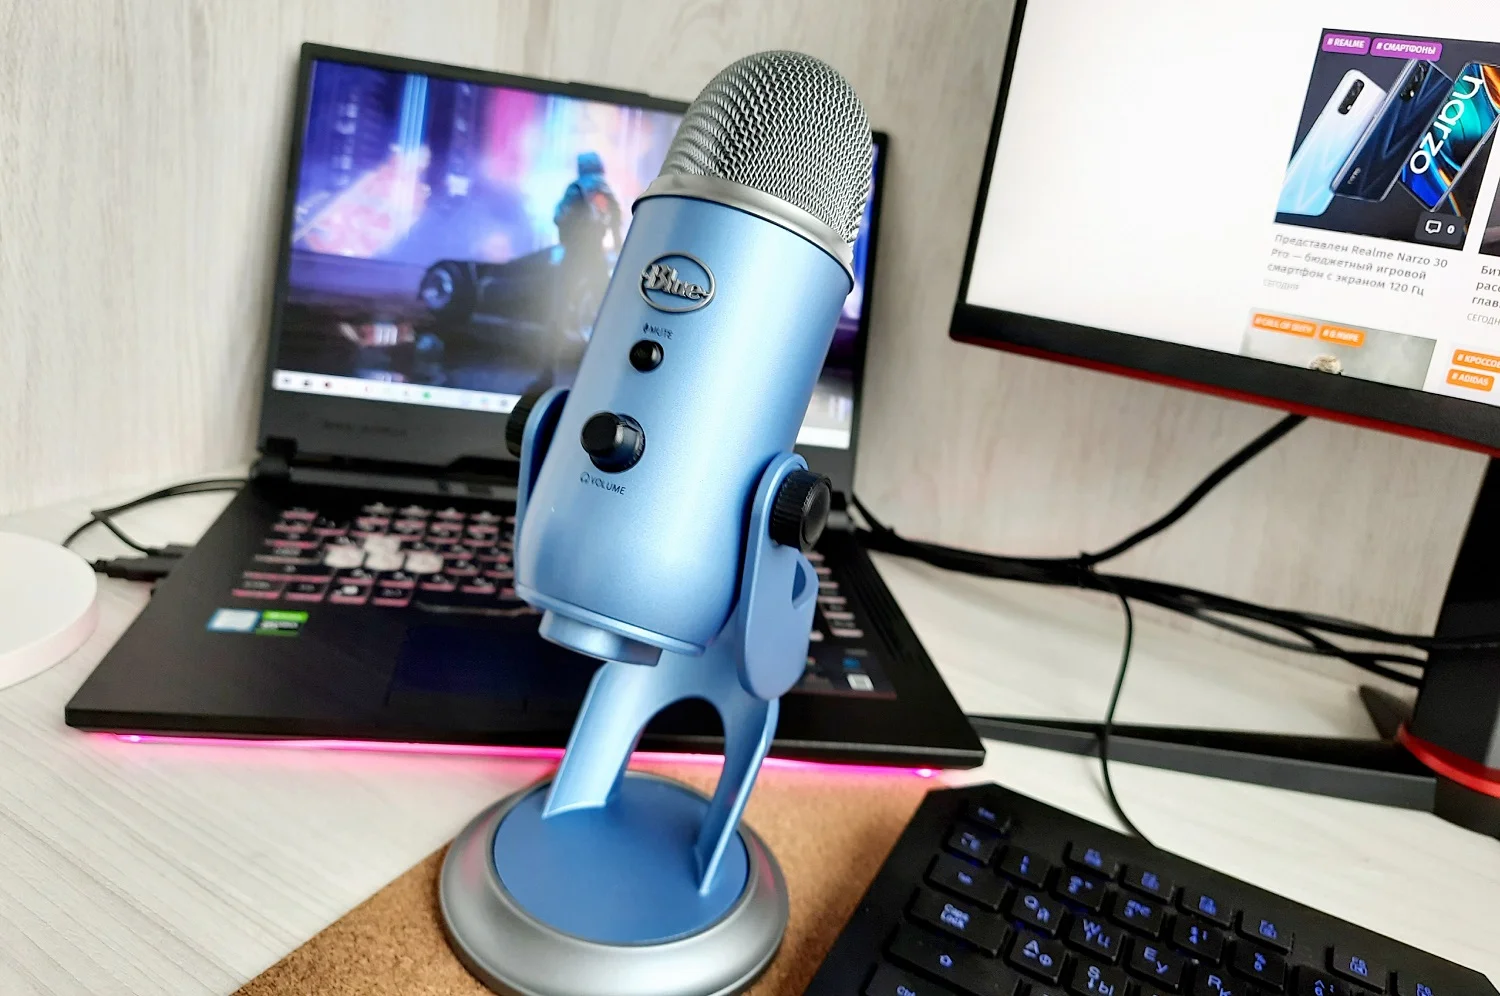 На обзор «Канобу» попал популярный микрофон Blue Yeti. Эта модель знакома многим по видео из YouTube или стримам в Twitch, а в интернете вокруг нее ведутся горячие споры. Разбираемся, что в Blue Yeti действительно не так, чем микрофон все же привлекает, кому нужен и для чего.